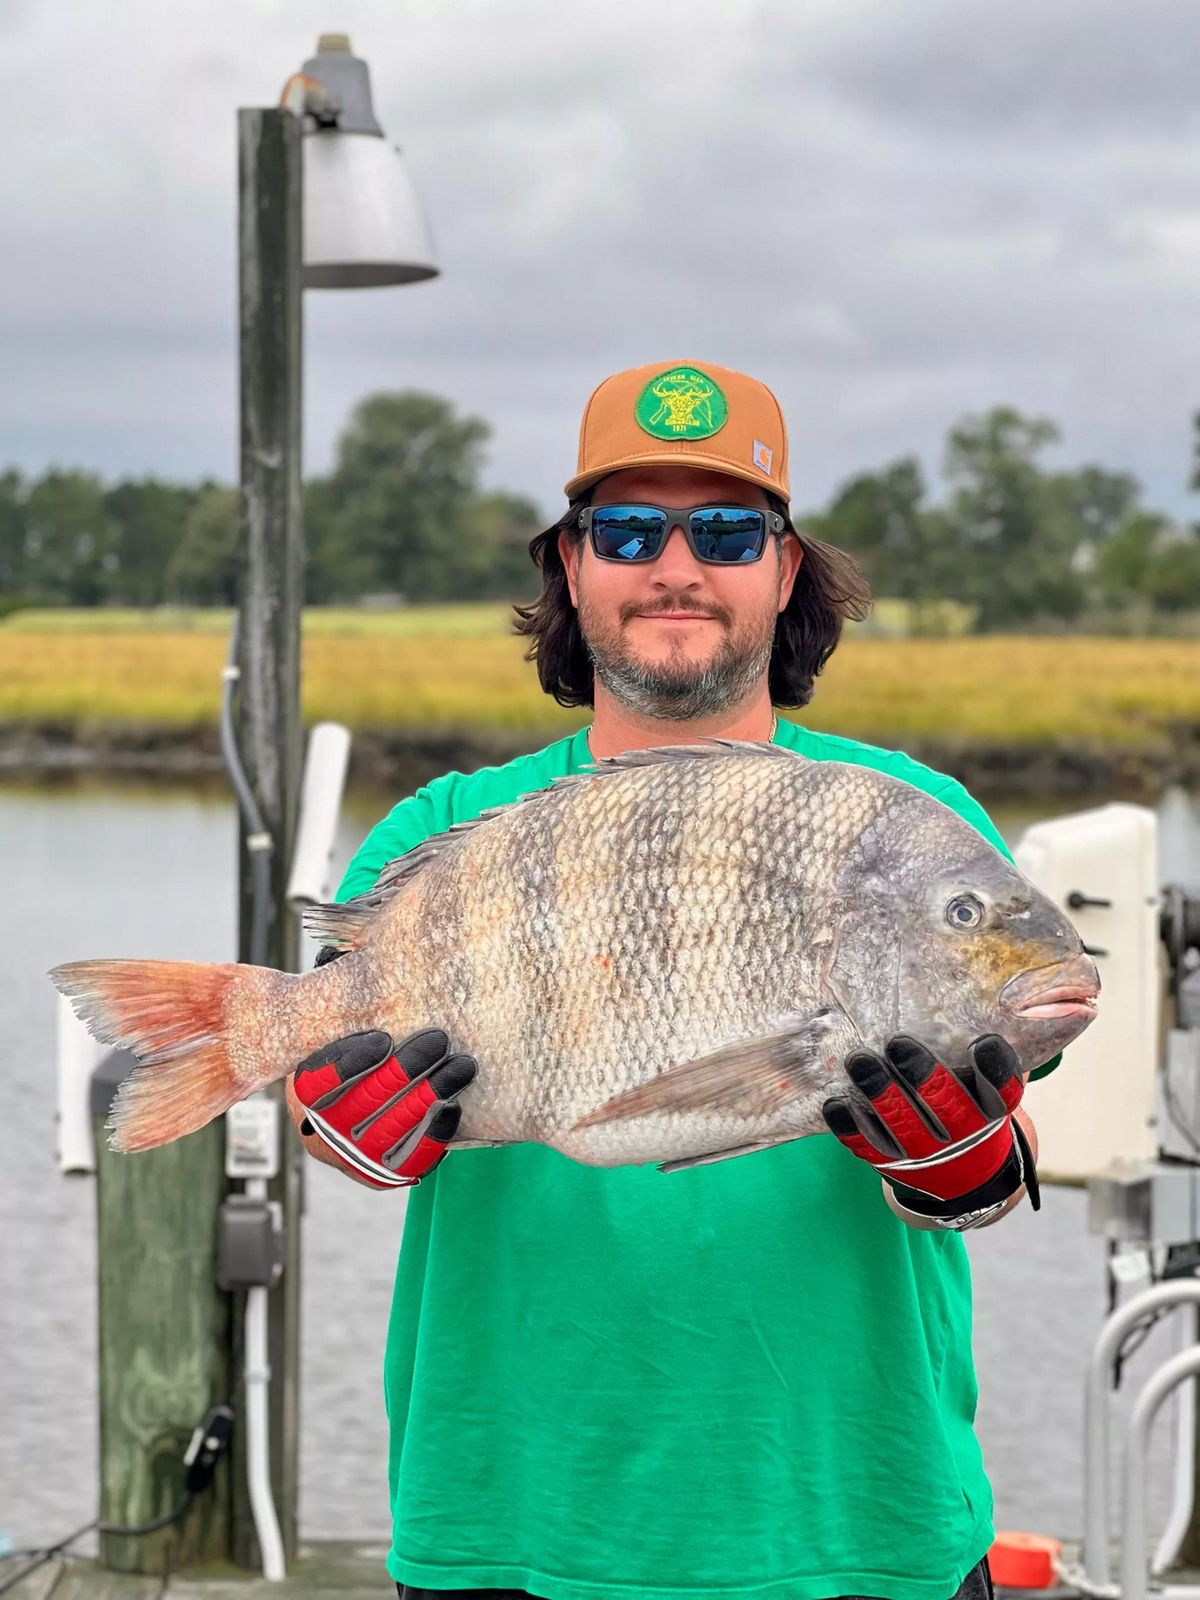 Un pêcheur du nom de Brian Summerlin a attrapé un poisson unique aux dents semblables à celles d'un être humain dans le détroit de Tangier, dans le Maryland.